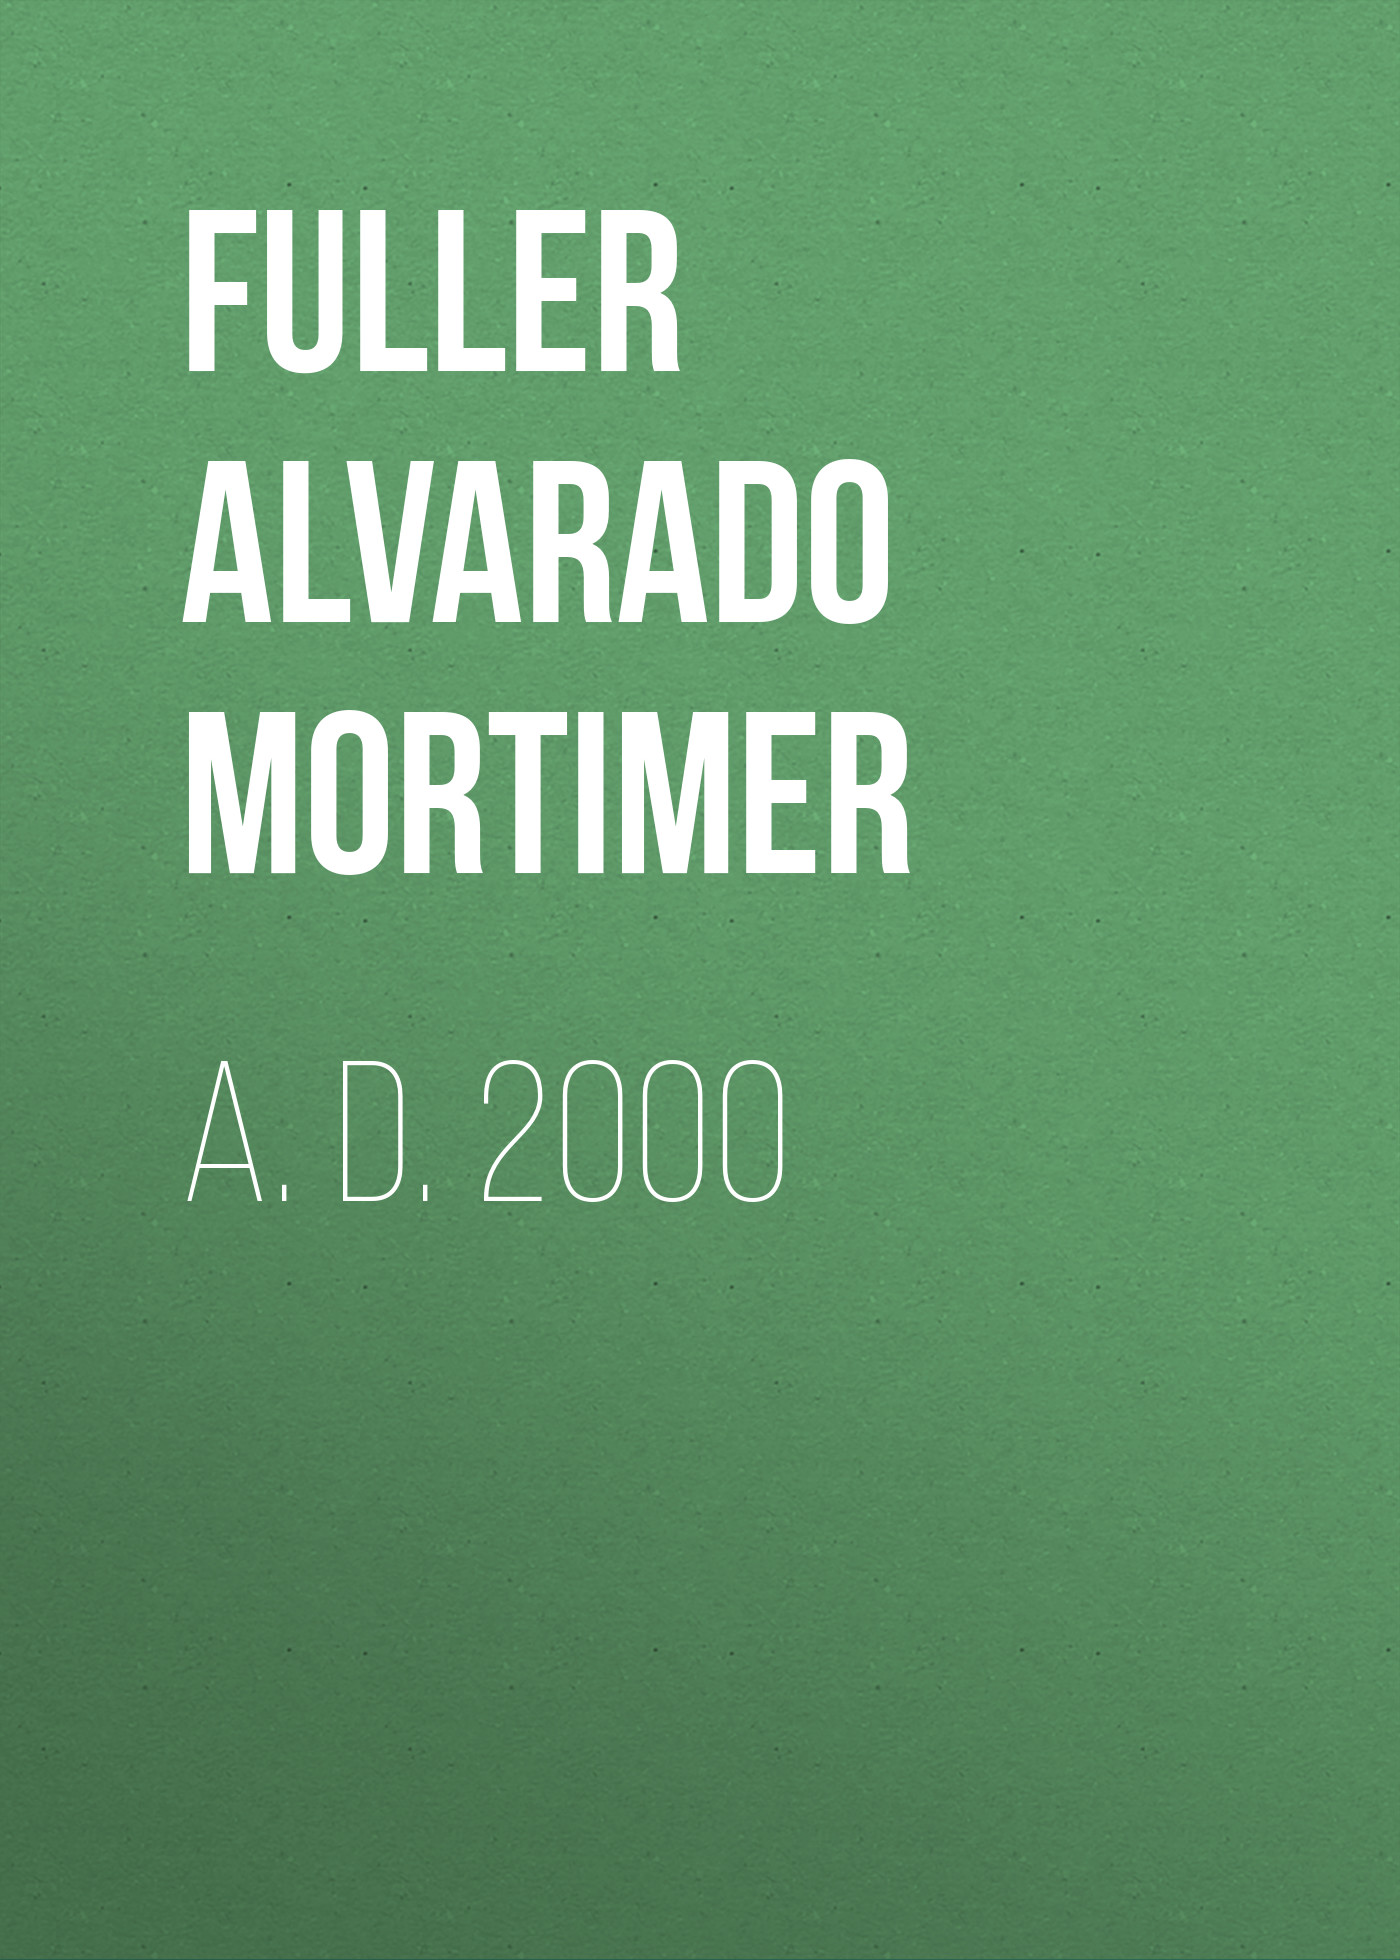 Книга A. D. 2000 из серии , созданная Alvarado Fuller, может относится к жанру Зарубежная старинная литература, Зарубежная классика. Стоимость электронной книги A. D. 2000 с идентификатором 24859331 составляет 0 руб.